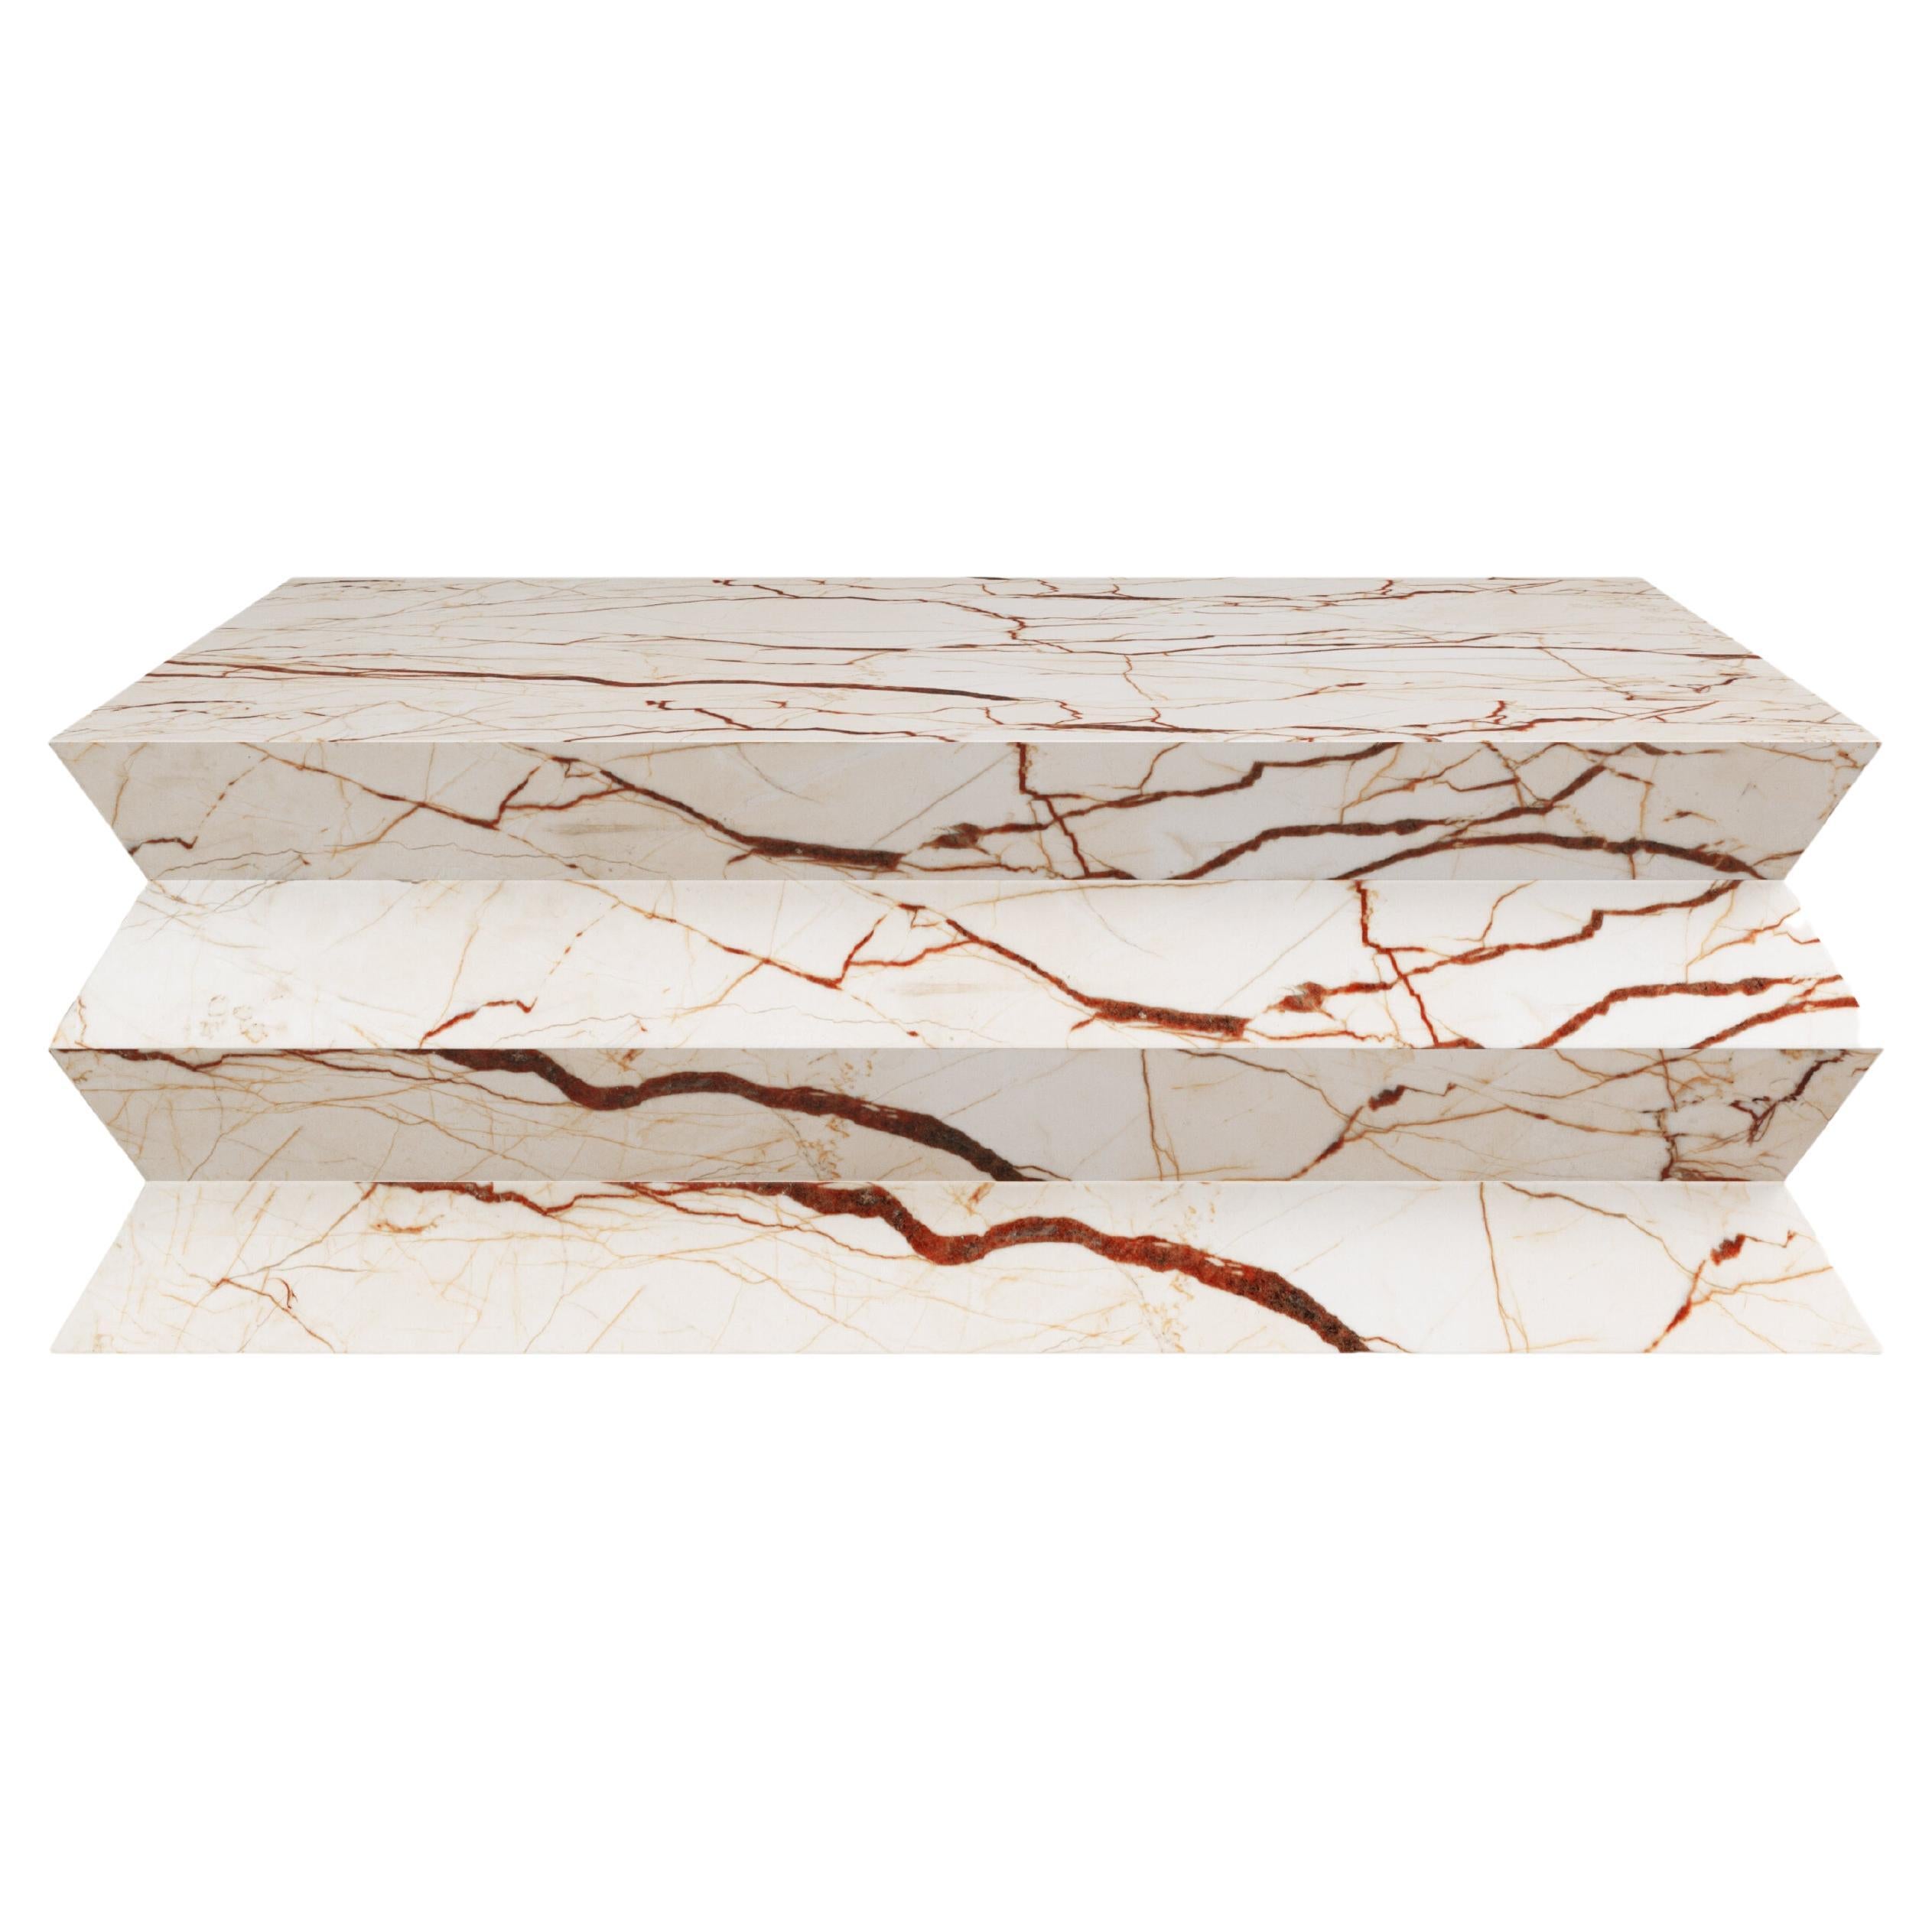 FORM(LA) table basse carrée Grinza 48 po. (L) x 48 po. (L) x 16 po. (H) Sofita marbre beige en vente